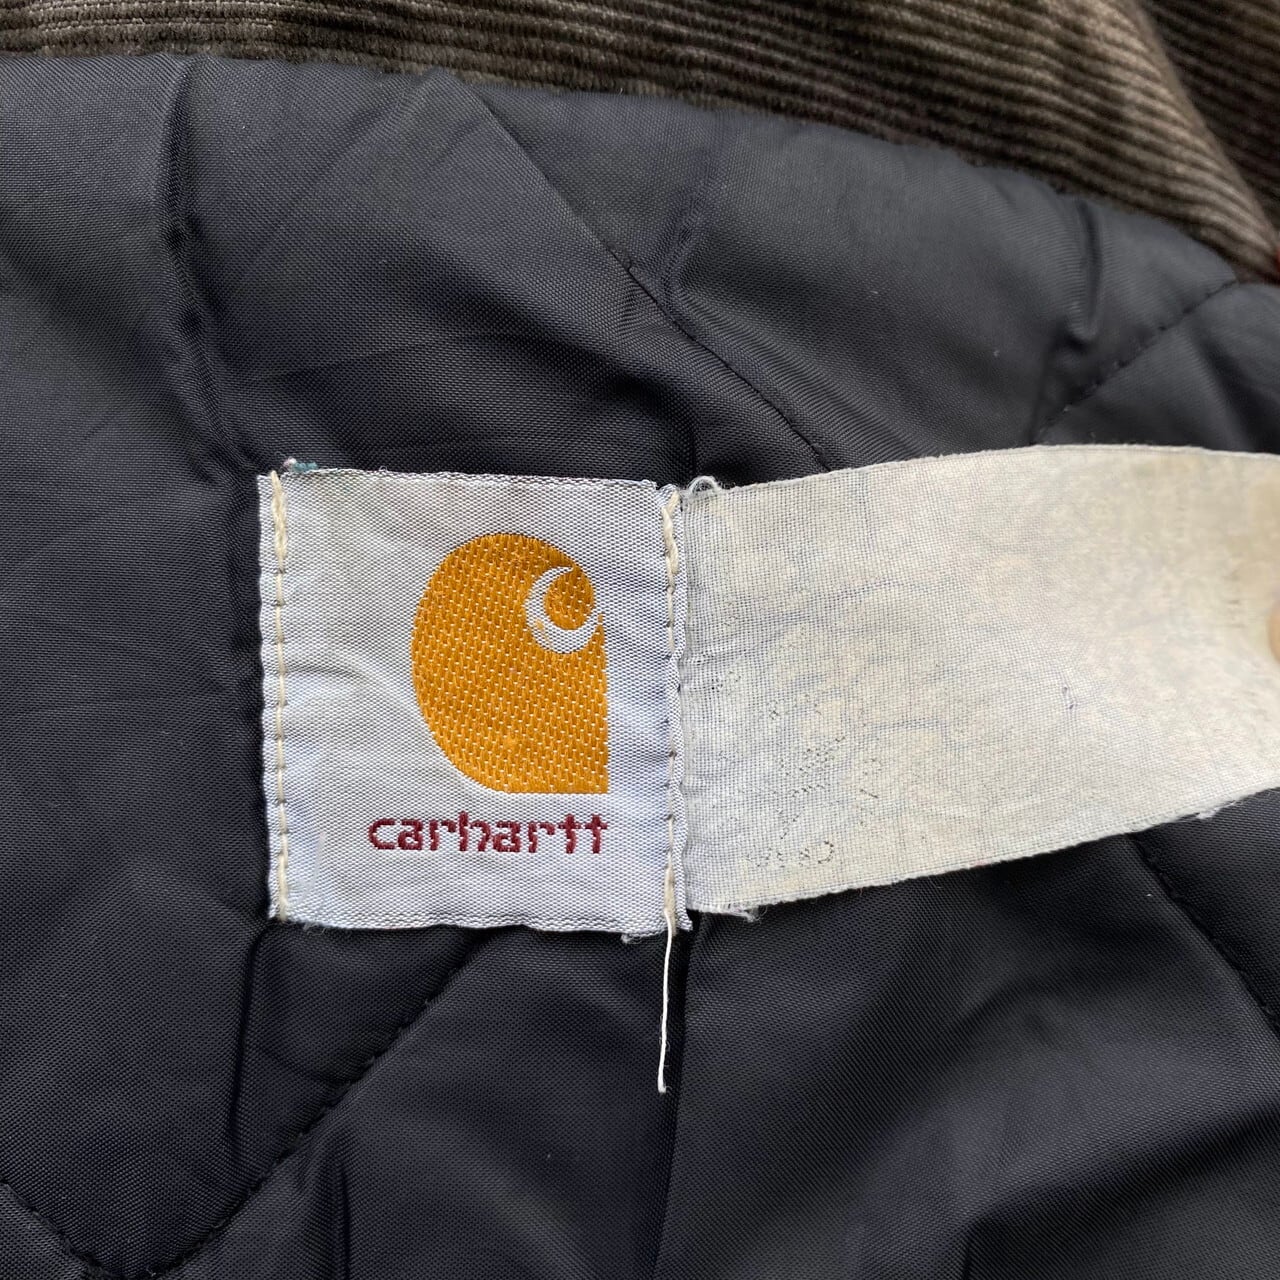 【carhartt 】再構築リメイクハンティングジャケット ダック AS133禁断の古着の扉ジャケット